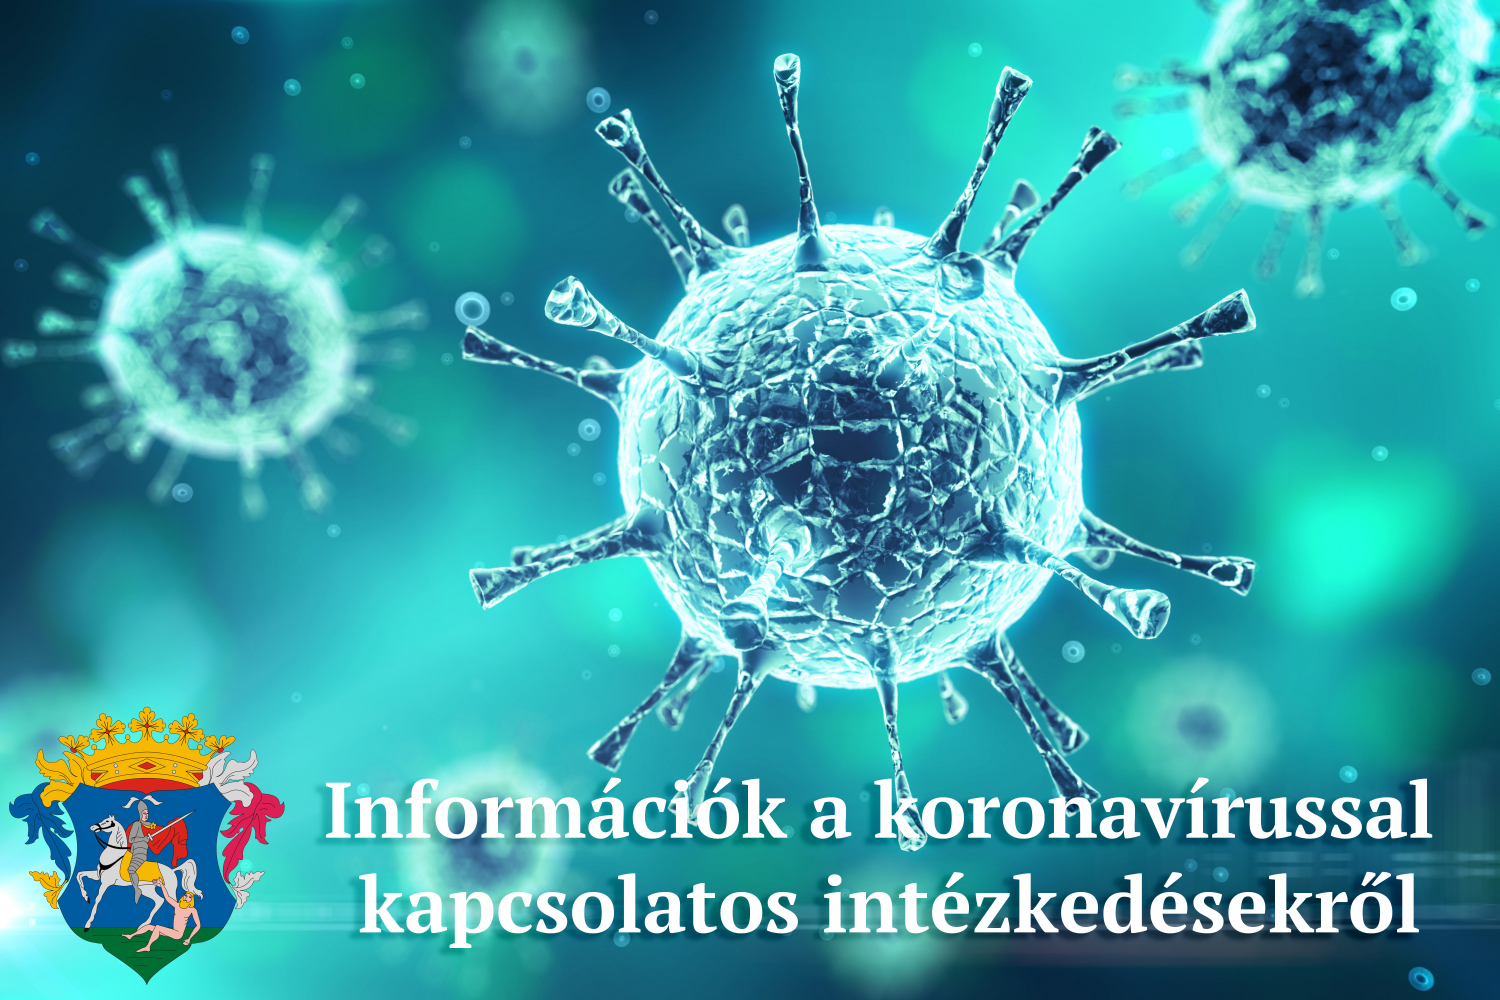 Koronavírussal kapcsolatos intézkedések, döntések 2020. május 4-7 között